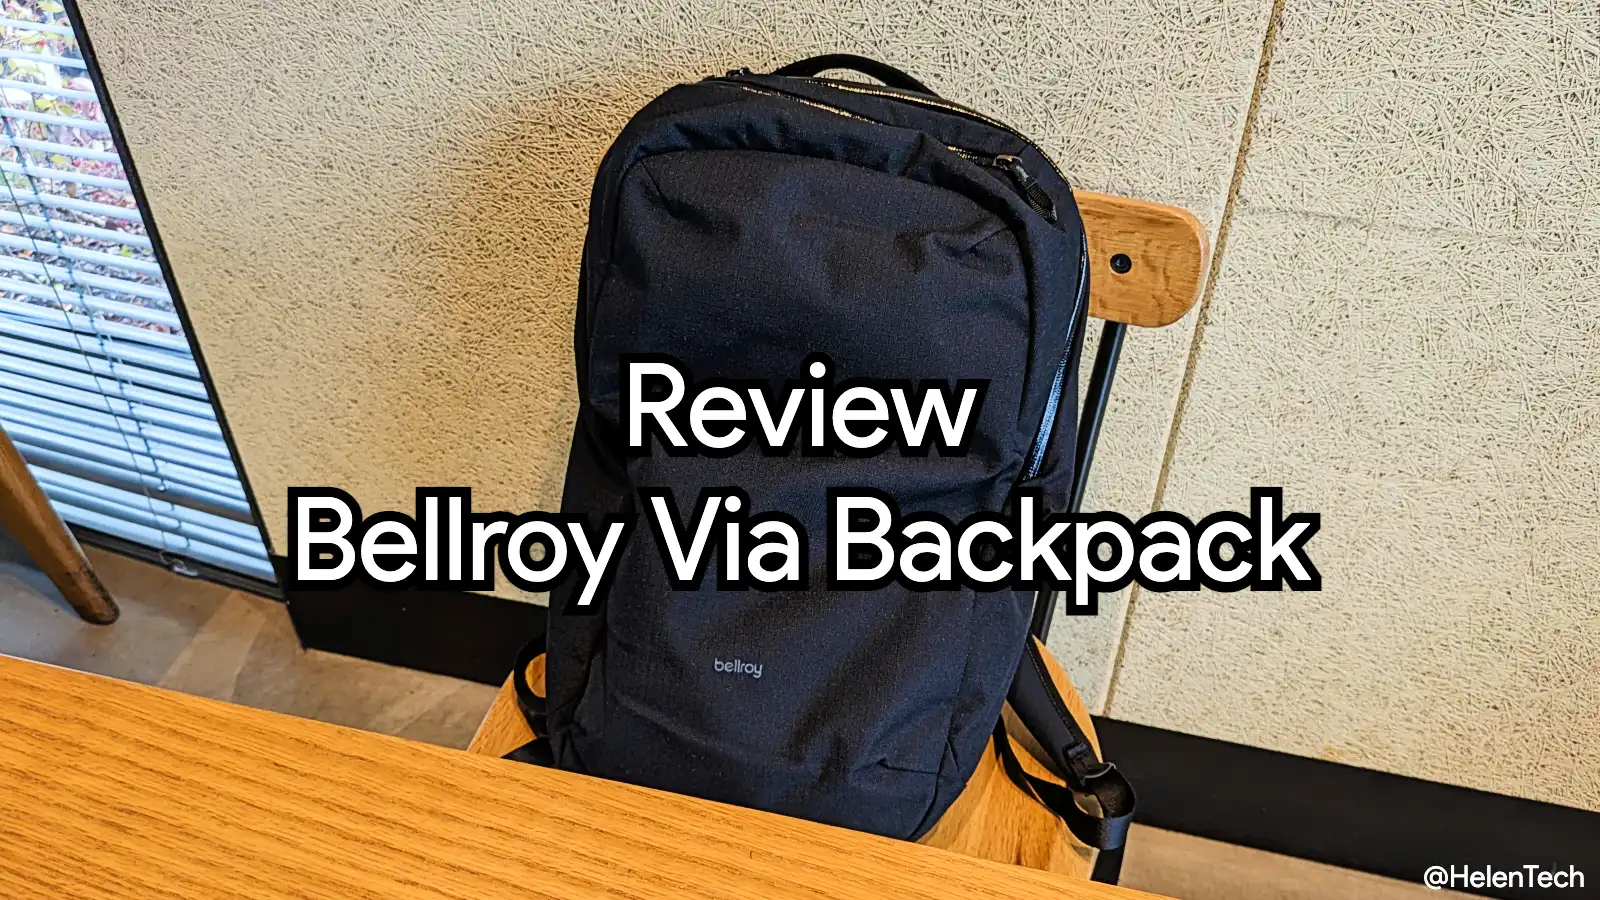 ｢Bellroy Via Backpack｣をレビュー。シンプルでミニマルなデザインのバックパックを求めてる人向き